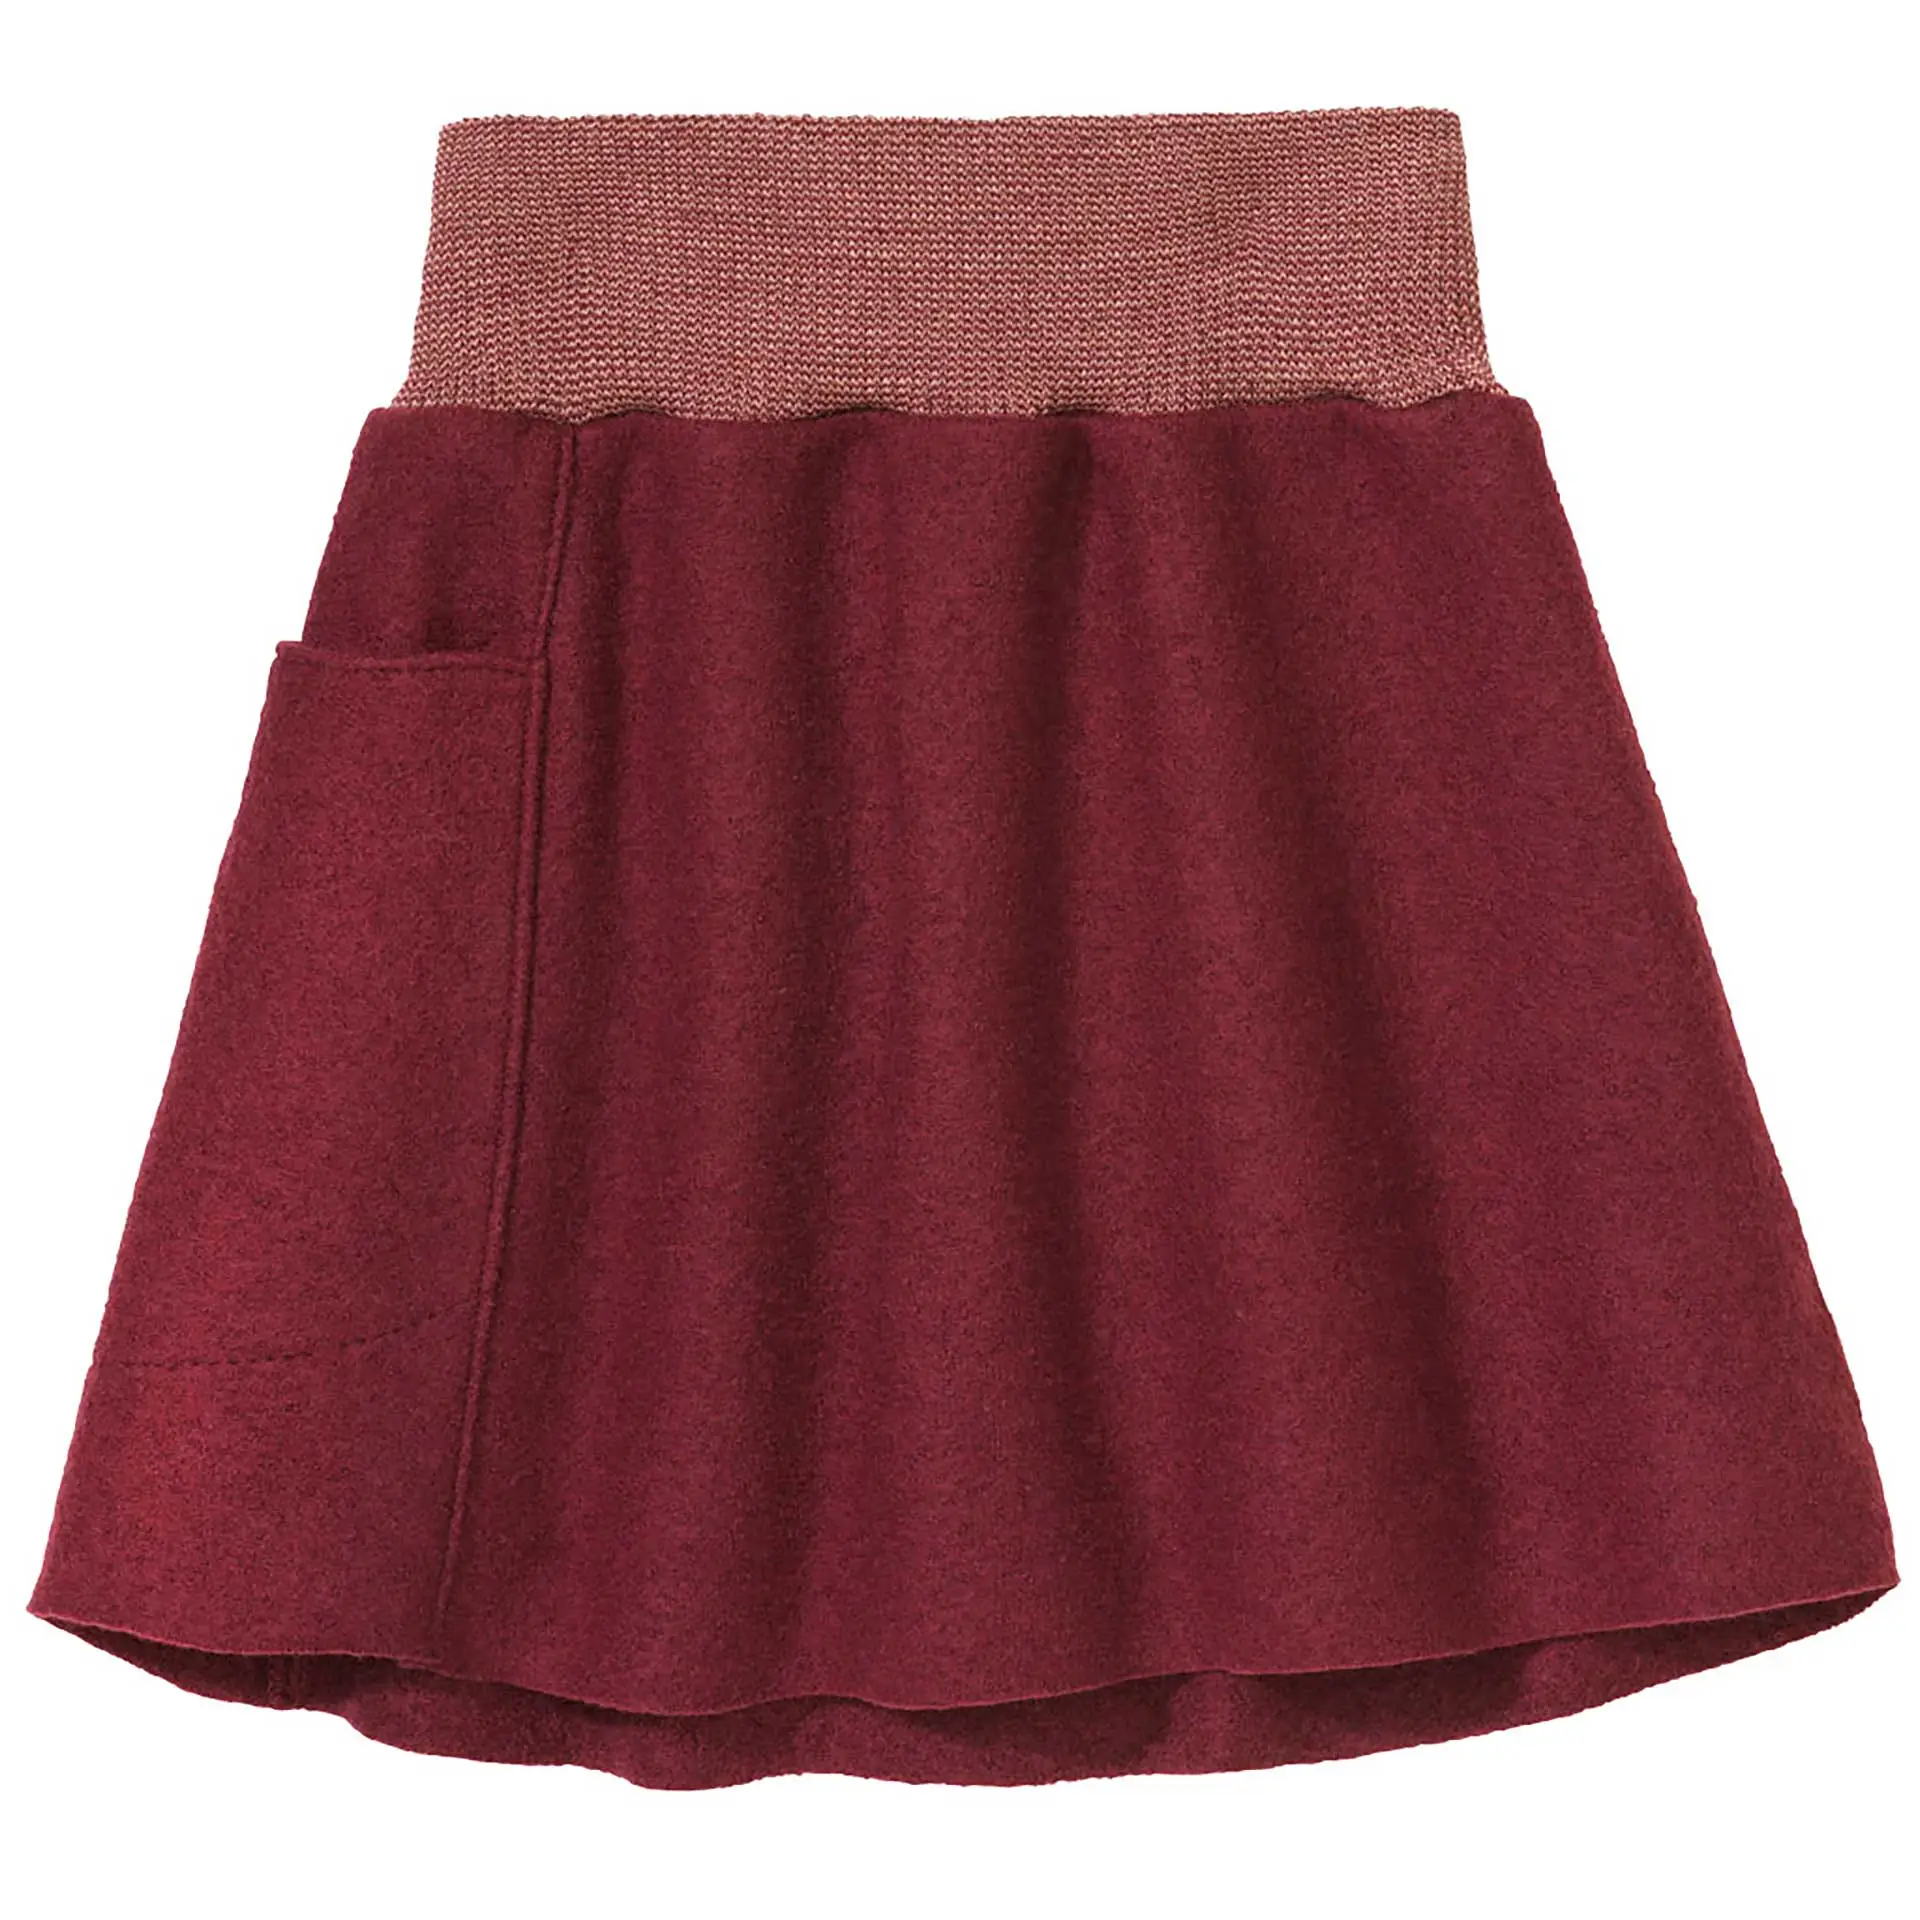 Boiled Wool Skirt